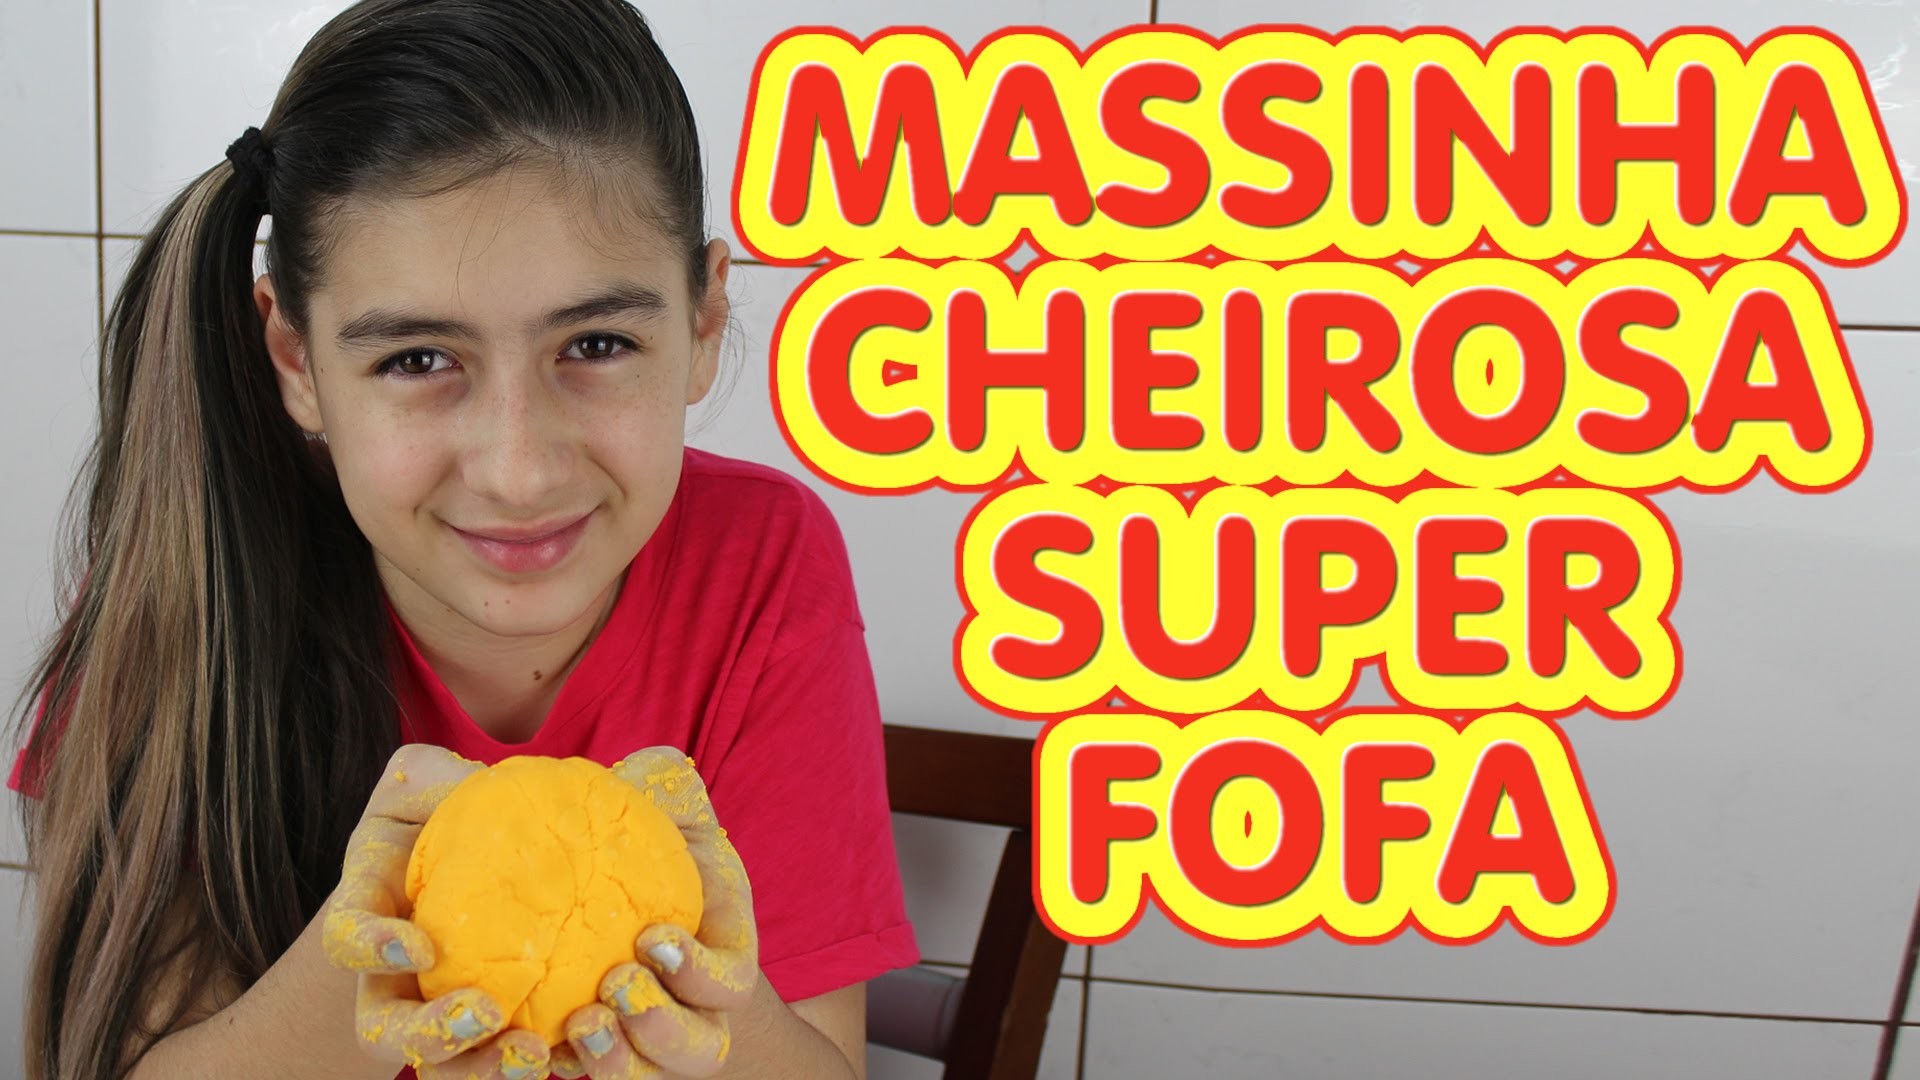 Massinha Fofa Cheirosa (Modelar, Macia, Diferente, Super Massa, DIY) Play Dough Soft Smelling